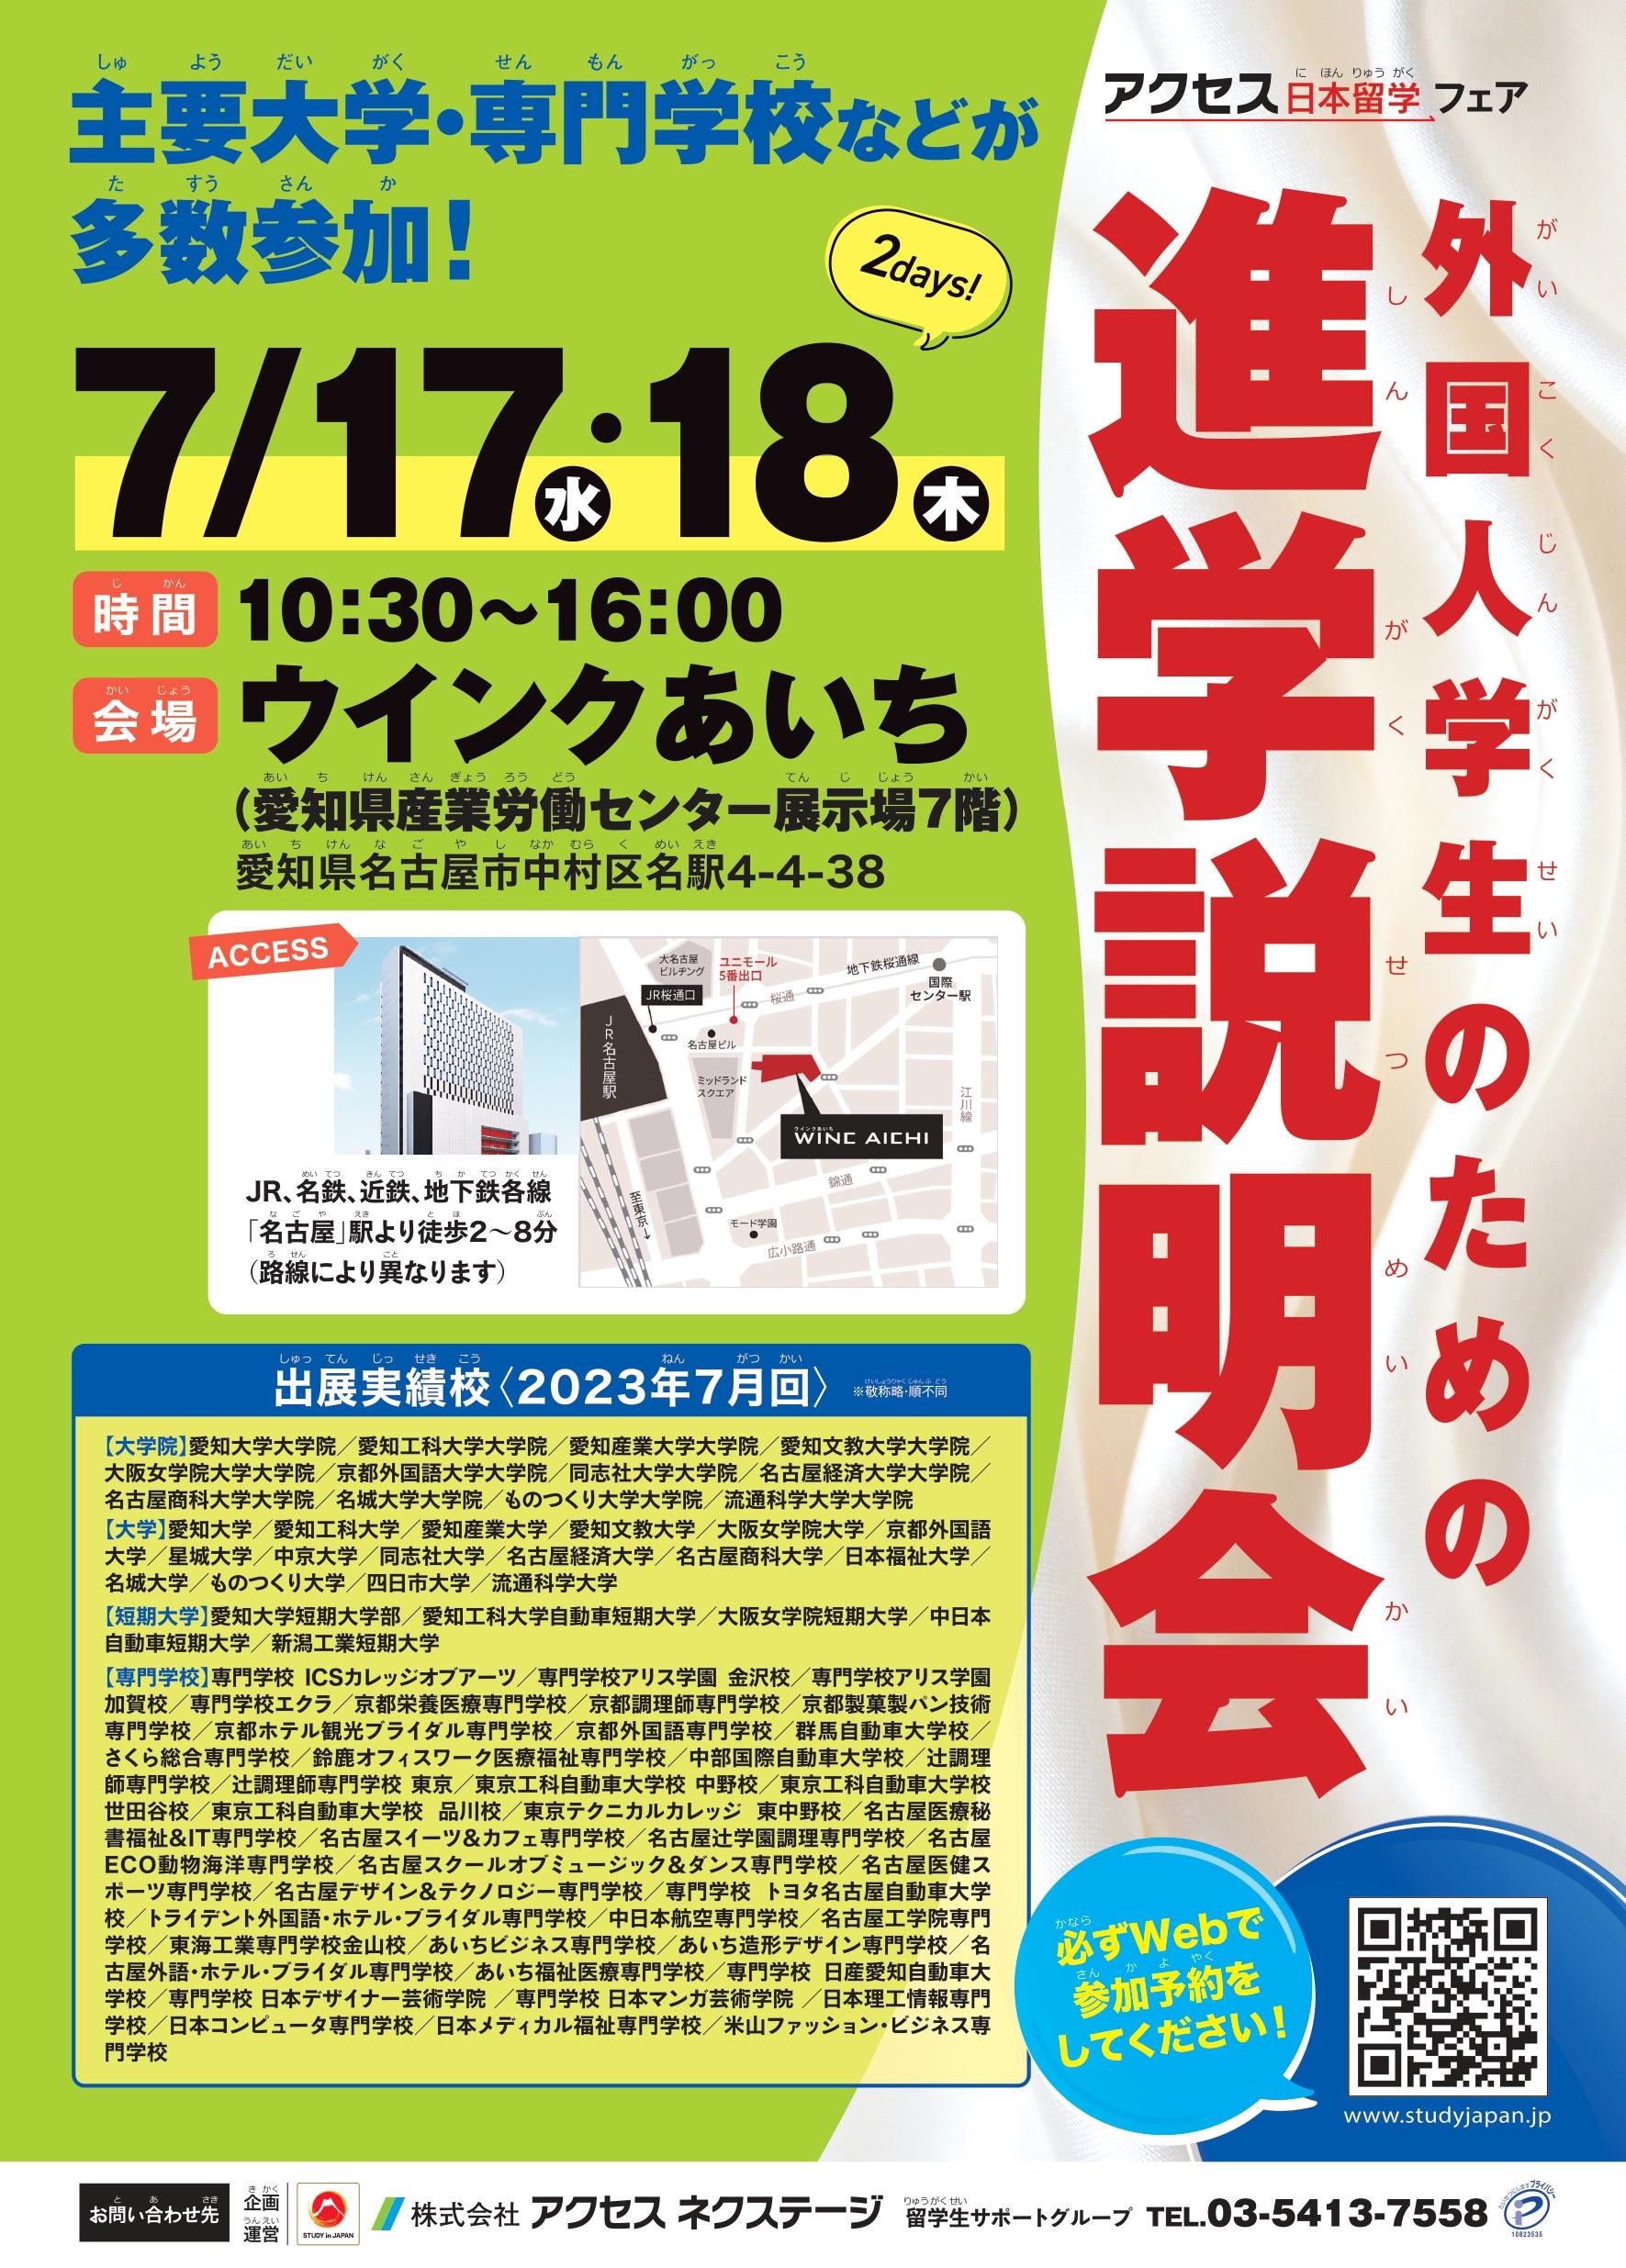 [Nagoya] Séance d'information sur l'avancement des étudiants étrangers_17 au 18 juillet 2024_Wink Aichi (Hall d'exposition du Centre du travail industriel de la préfecture d'Aichi)